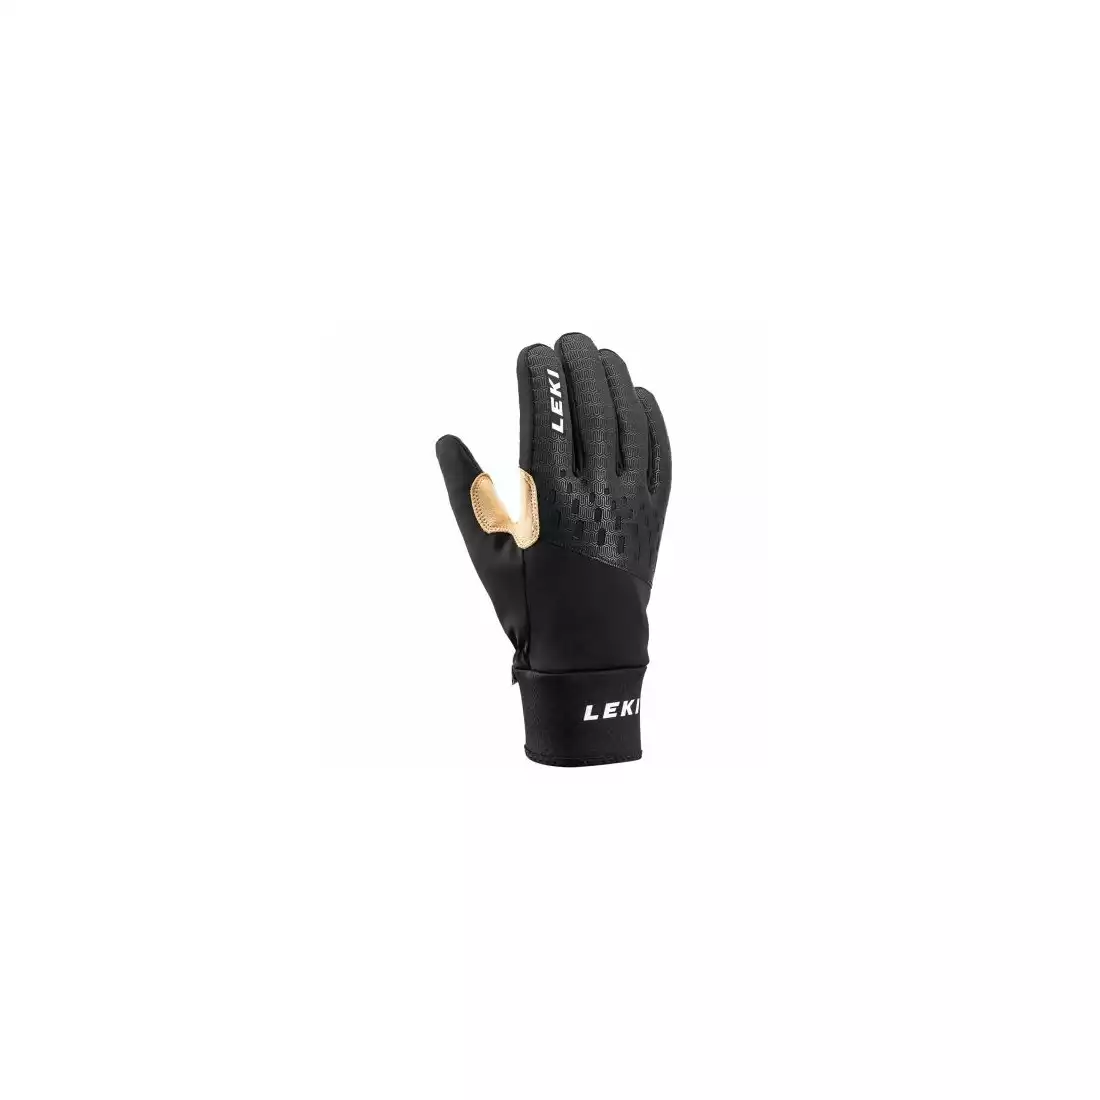 LEKI Nordic Thermo Premium zimní rukavice, černá a béžová